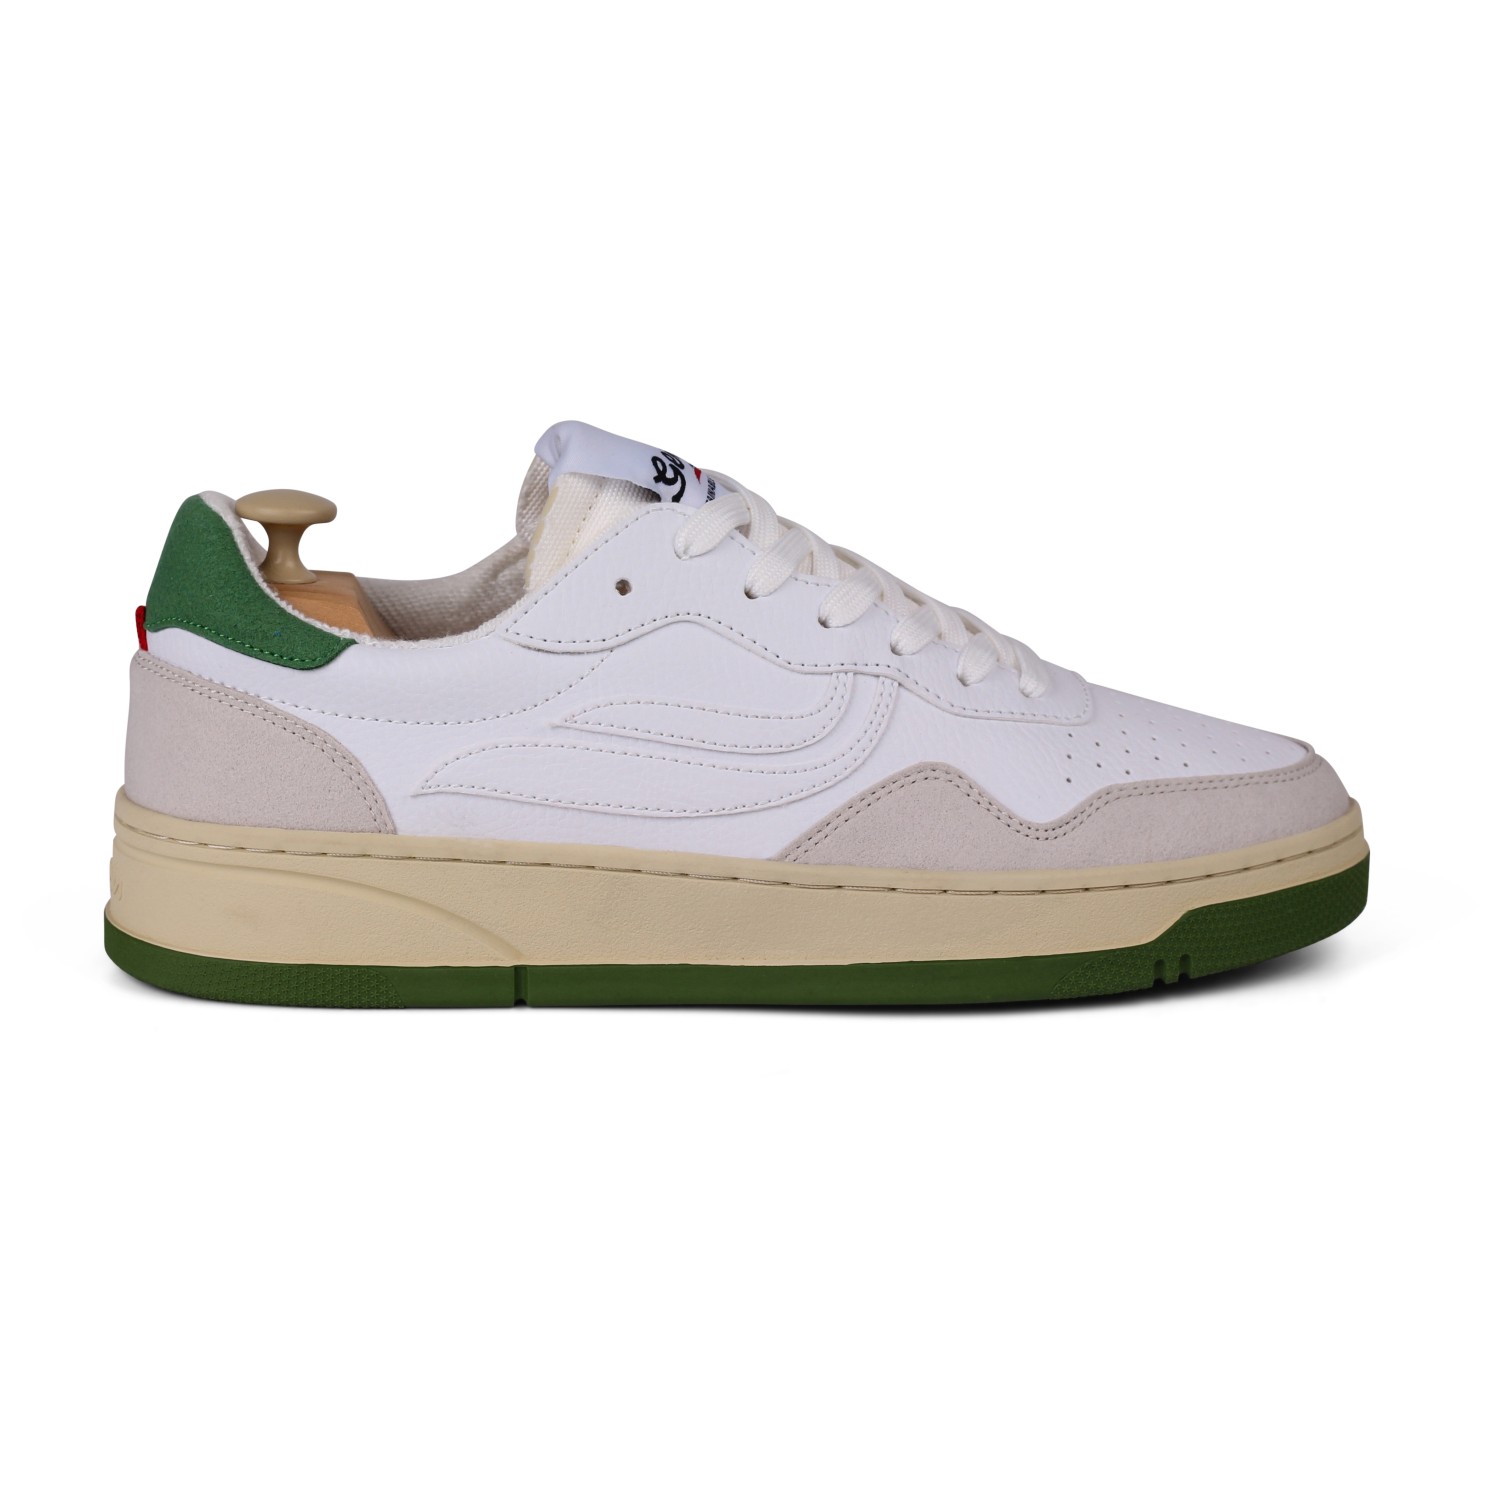 Кроссовки Genesis Footwear G Soley 2 0 Green Serial, цвет Offwhite/White/Green кроссовки genesis footwear g soley 2 0 hevea rubber цвет white white